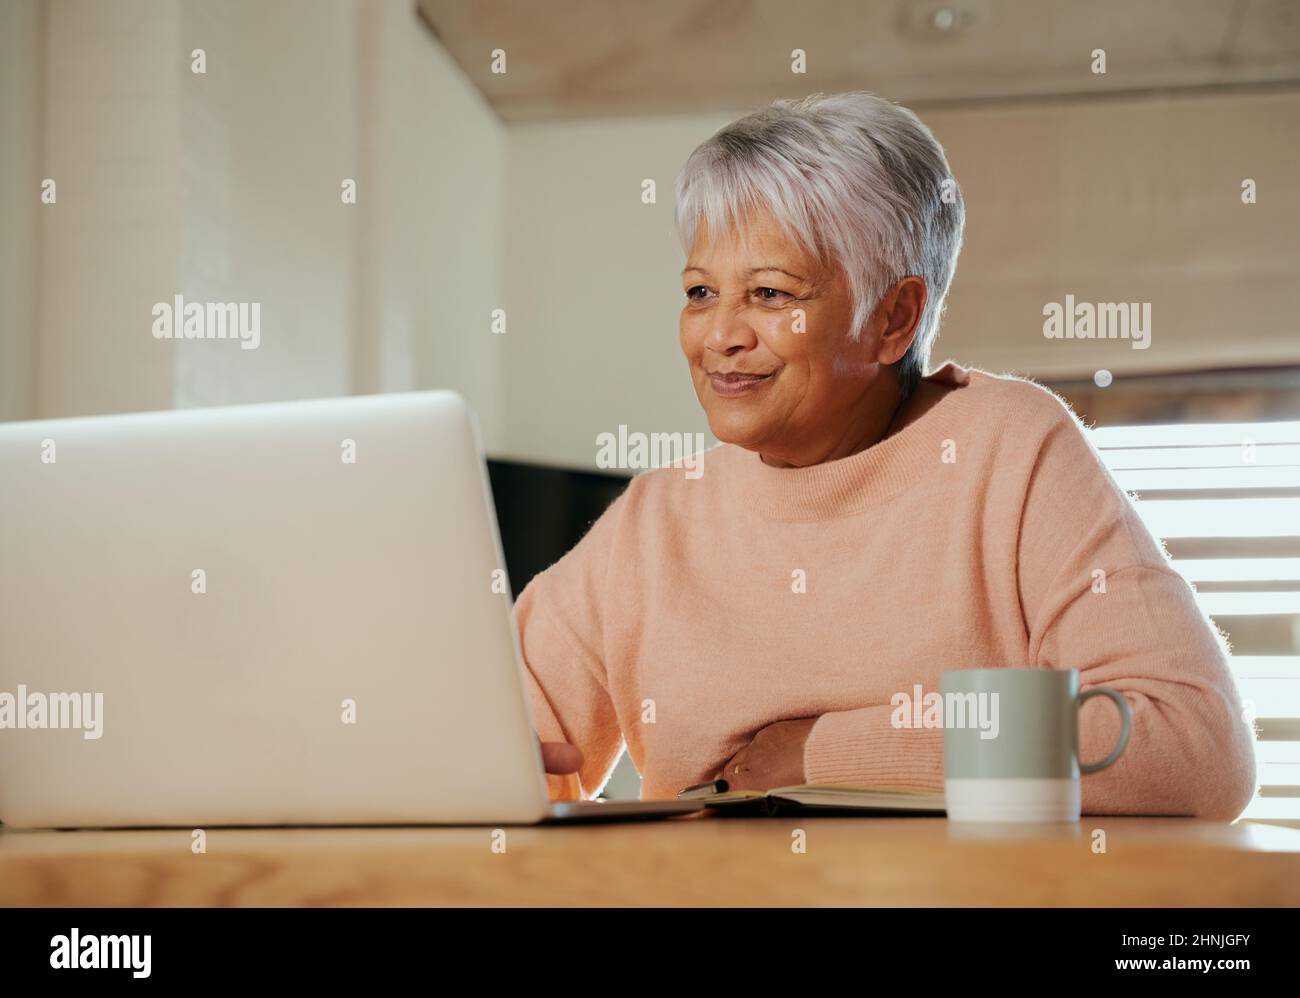 Femme âgée, multi-ethnique, assise au comptoir à la maison avec un ordinateur portable, souriant. Banque D'Images